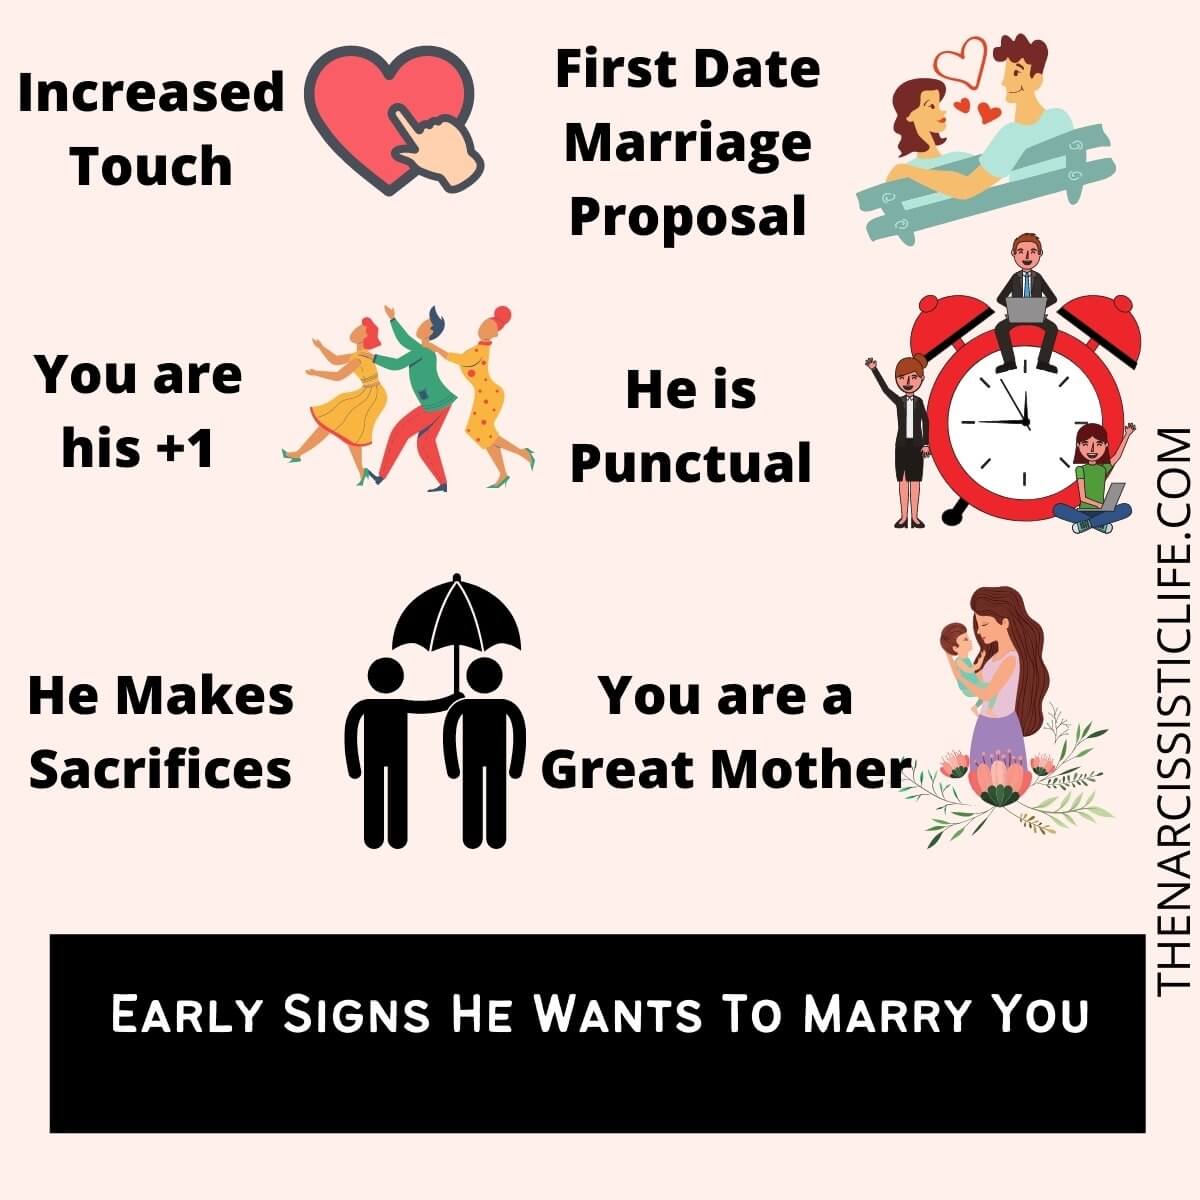 "그가 나와 결혼하고 싶어 할까?": 15가지 방법으로 말할 수 있습니다!